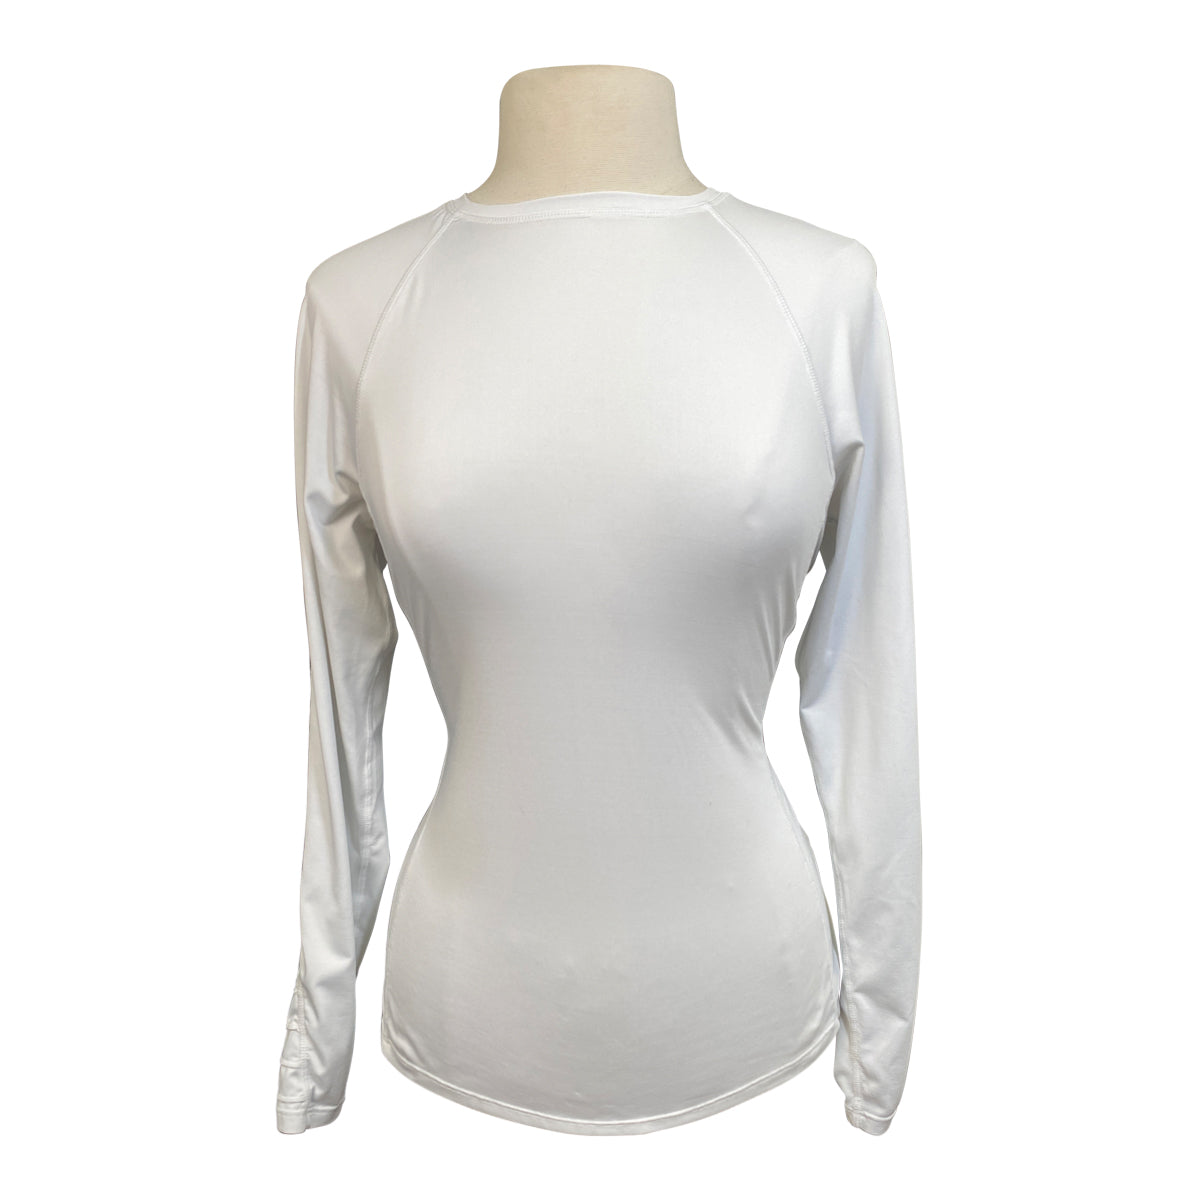 Bit & Bloom 'McKenzie' Long Sleeve Top in White